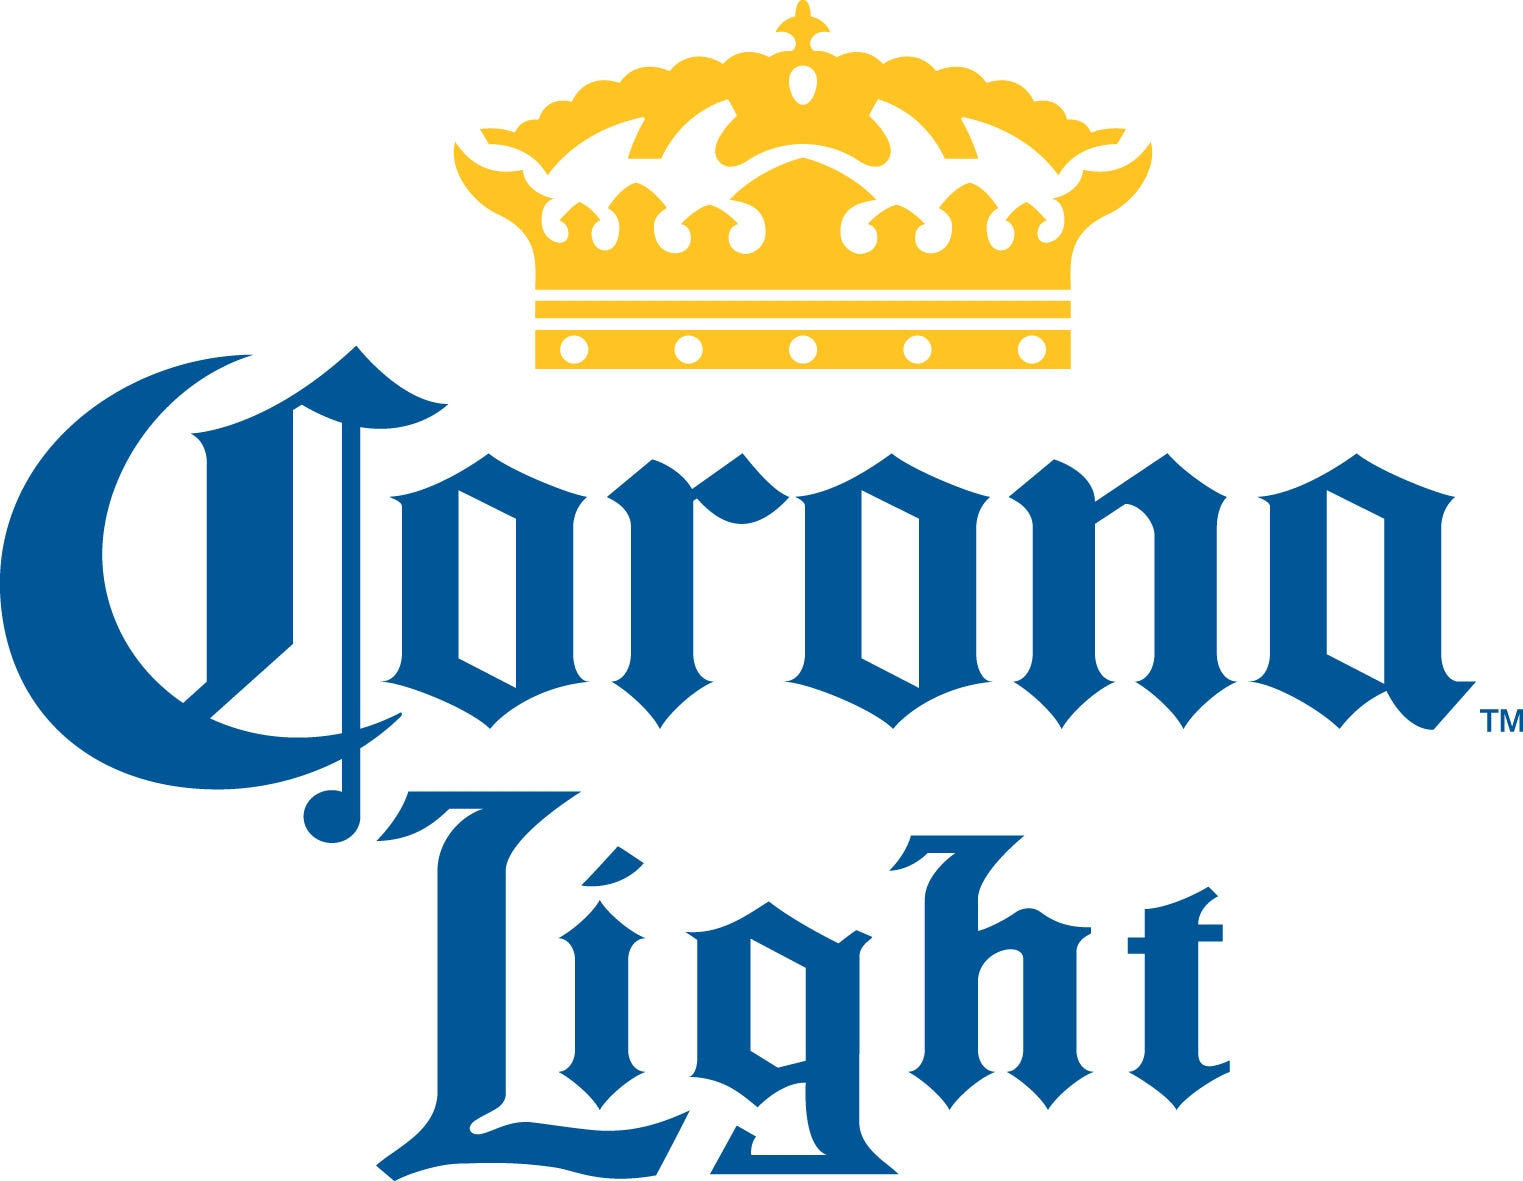 Corona Light 12 Pk Bottles